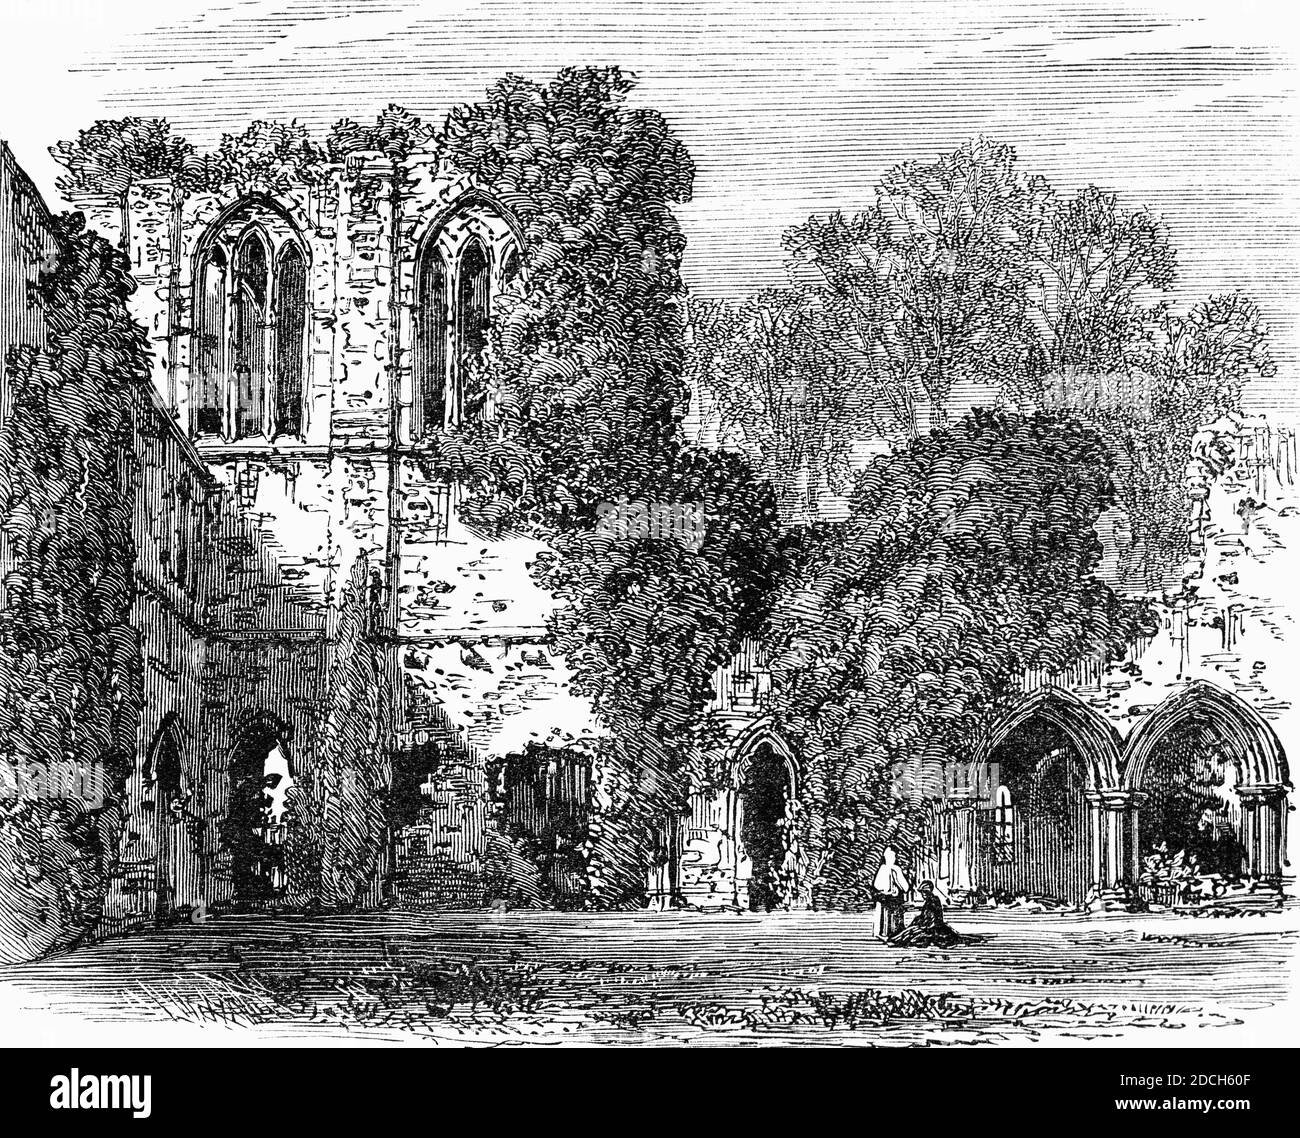 Una vista del 19 ° secolo di Netley Abbey, un monastero tardo medievale in rovina nel villaggio di Netley vicino a Southampton in Hampshire, Inghilterra. L'abbazia fu fondata nel 1239 come casa di monaci dell'austero ordine cistercense, ma nonostante il patronato reale, Netley non era mai ricca, non produceva studiosi influenti né uomini di chiesa, e la sua storia di quasi 300 anni era tranquilla. Foto Stock